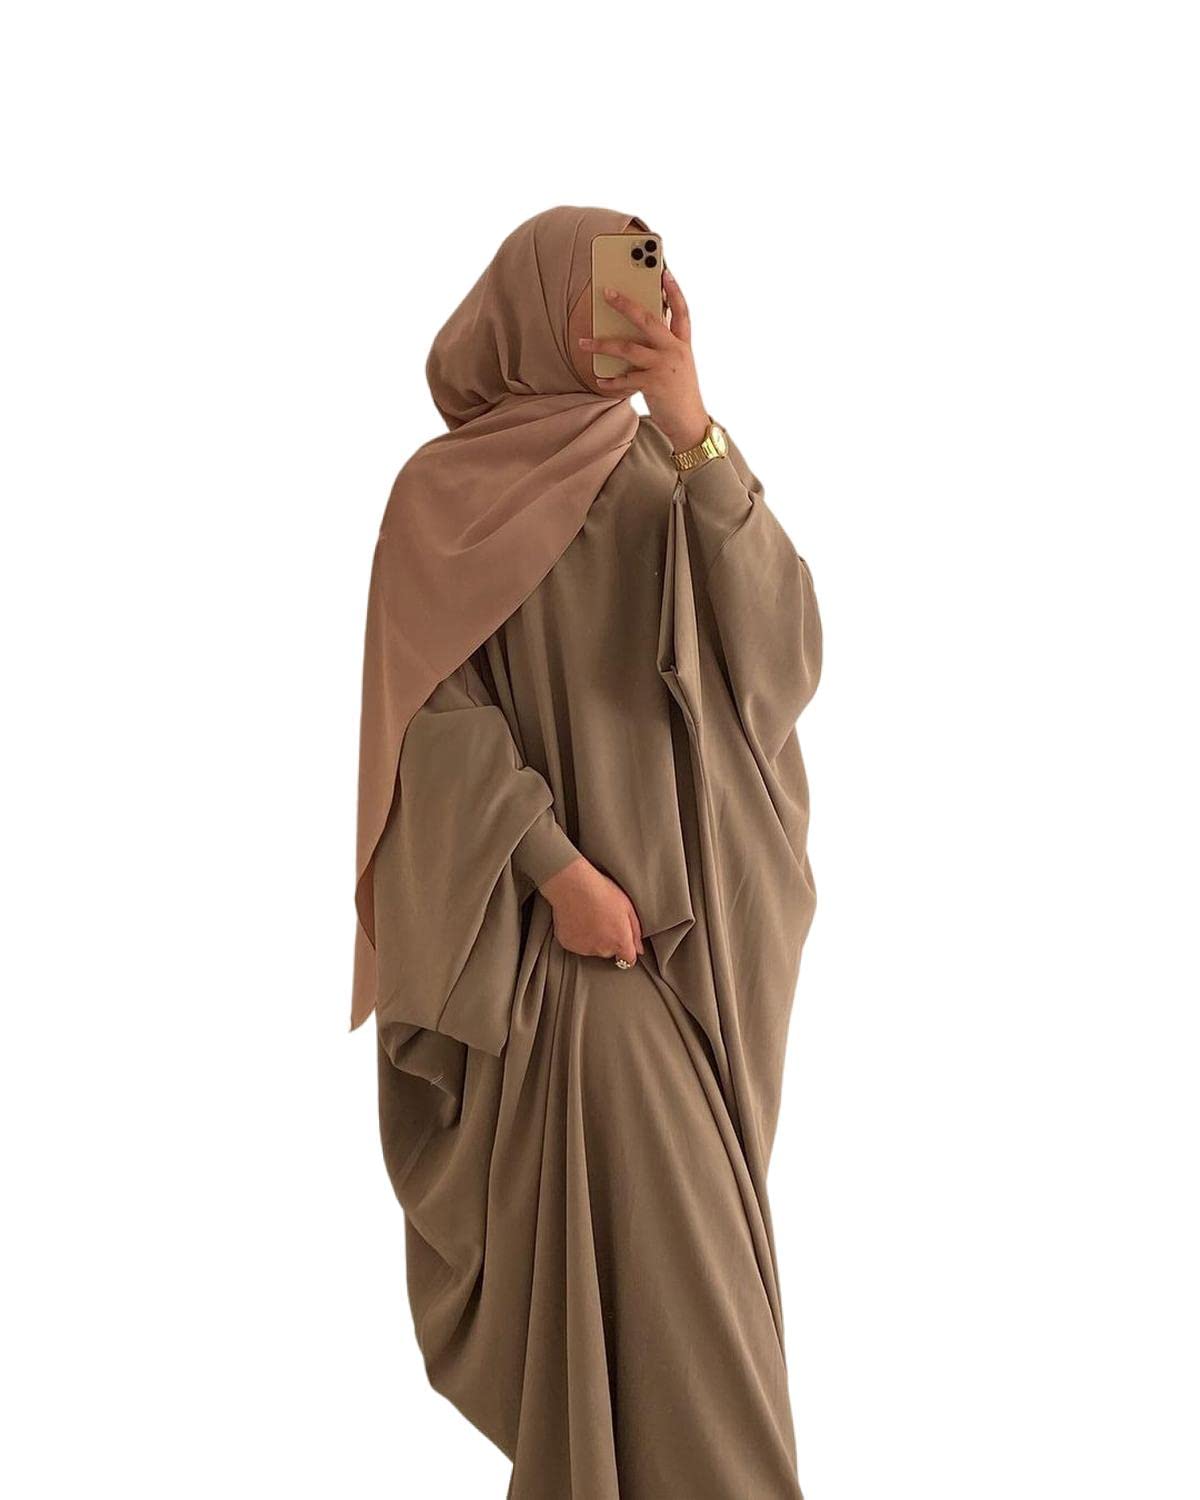 RUIG Damen Kleid Muslimische Gebet Abaya Islamische Robe Maxi Afrikanischer Kaftan Türkei Islam Dubai in voller Länge mit Hijab, Khaki Einheitsgröße